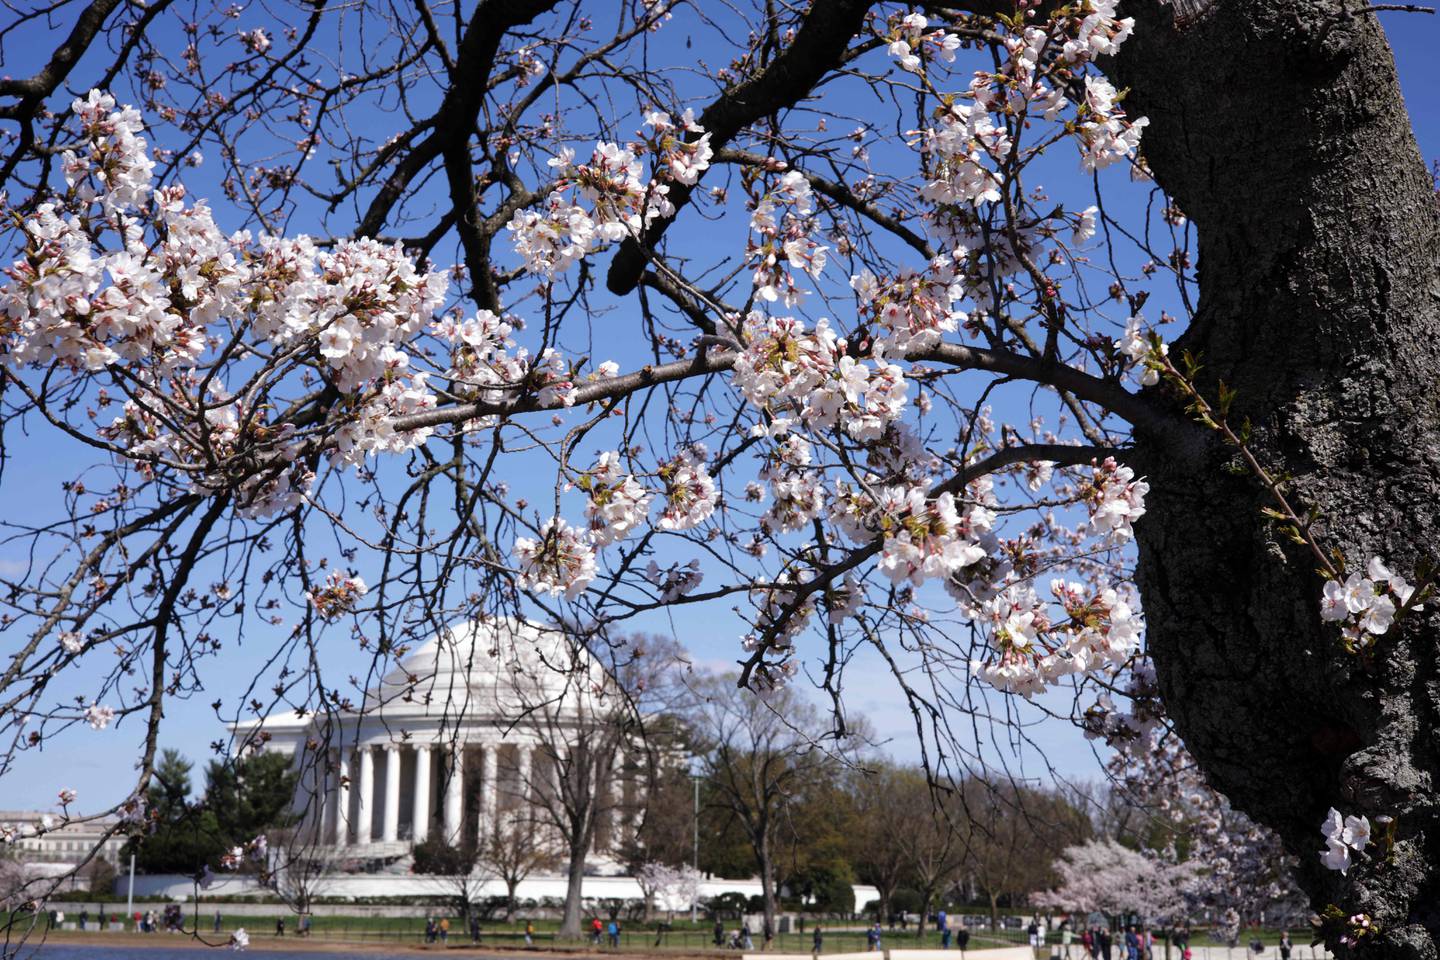 I den amerikanske hovedstaden Washington D.C. har kirsebærtrærne blomstret rekordtidlig i år, melder NTB.